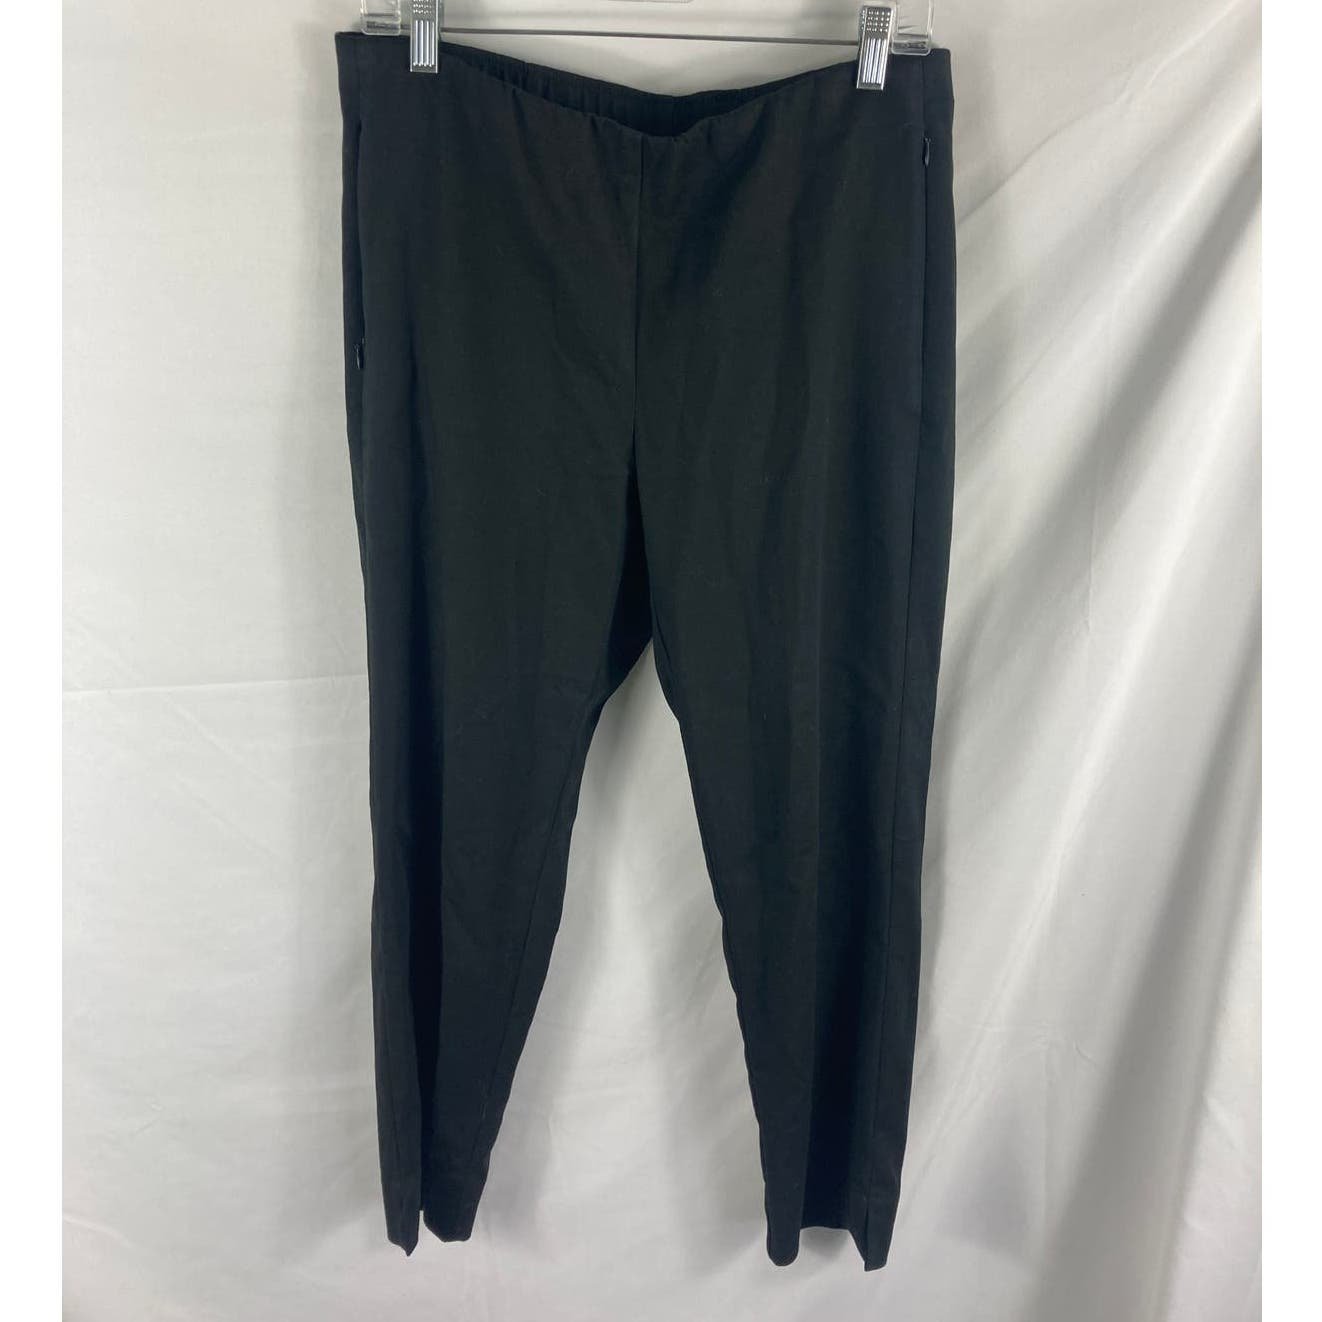 Authentic J Jill Essential Cotton Stretch Black Pants Size 12P Pey6uYoBB best sale